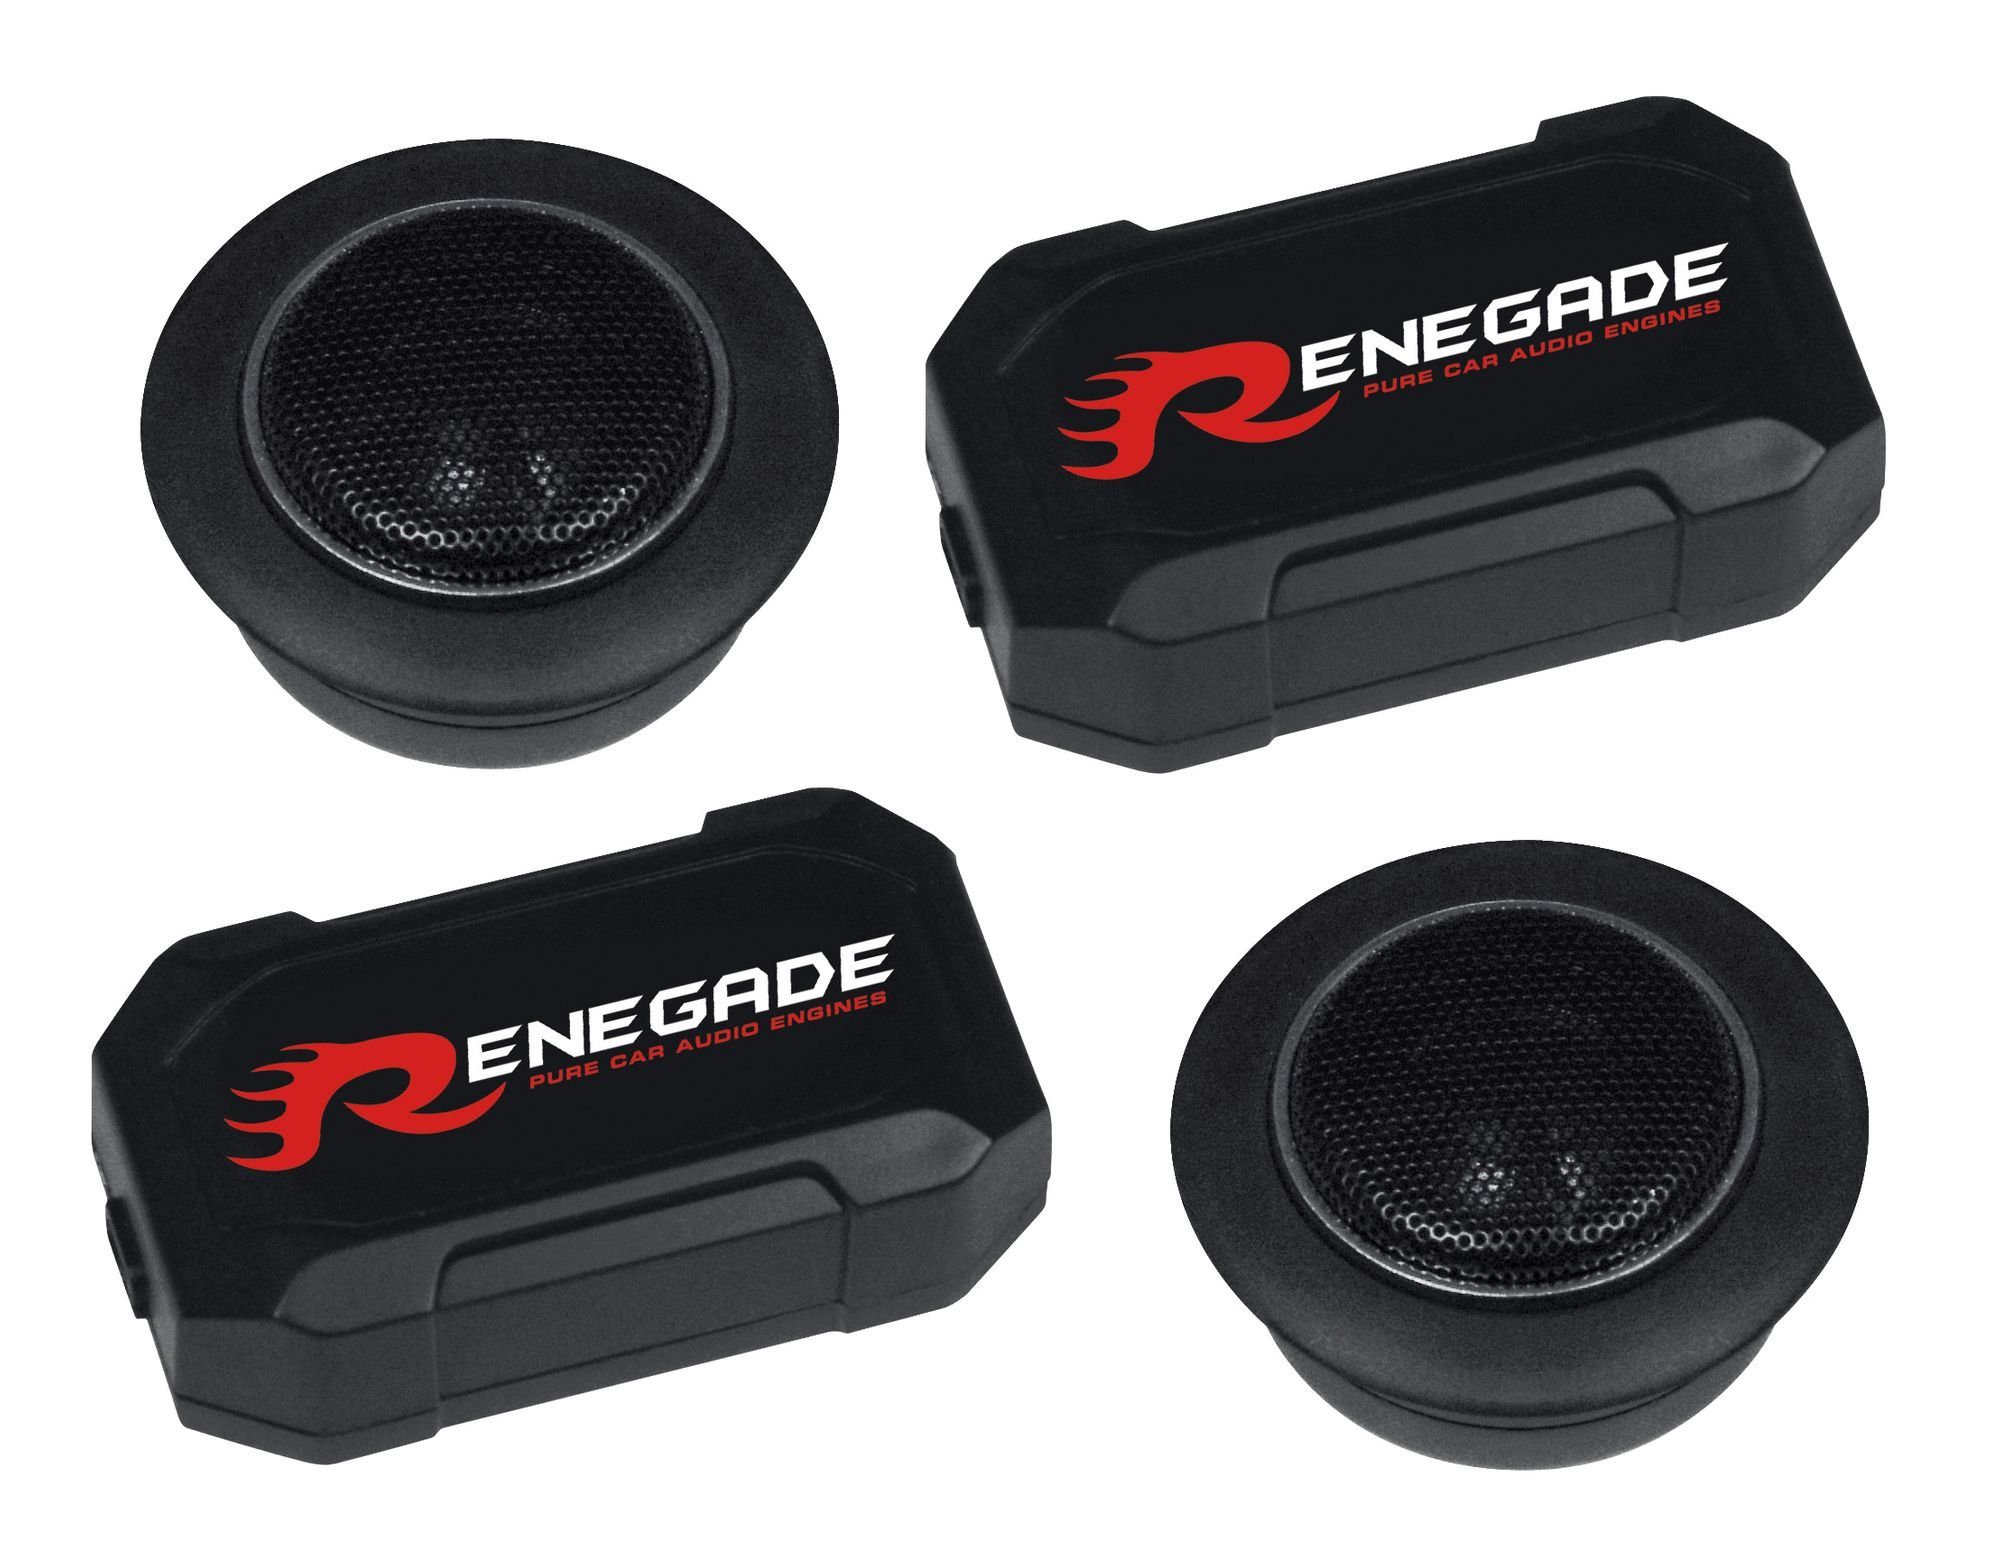 Renegade RX 6.2T Gewebe mit Frequenzweichen Gewebe 6.2T (Renegade Hochtöner Frequenzweichen) RX Hochtöner mit Auto-Lautsprecher